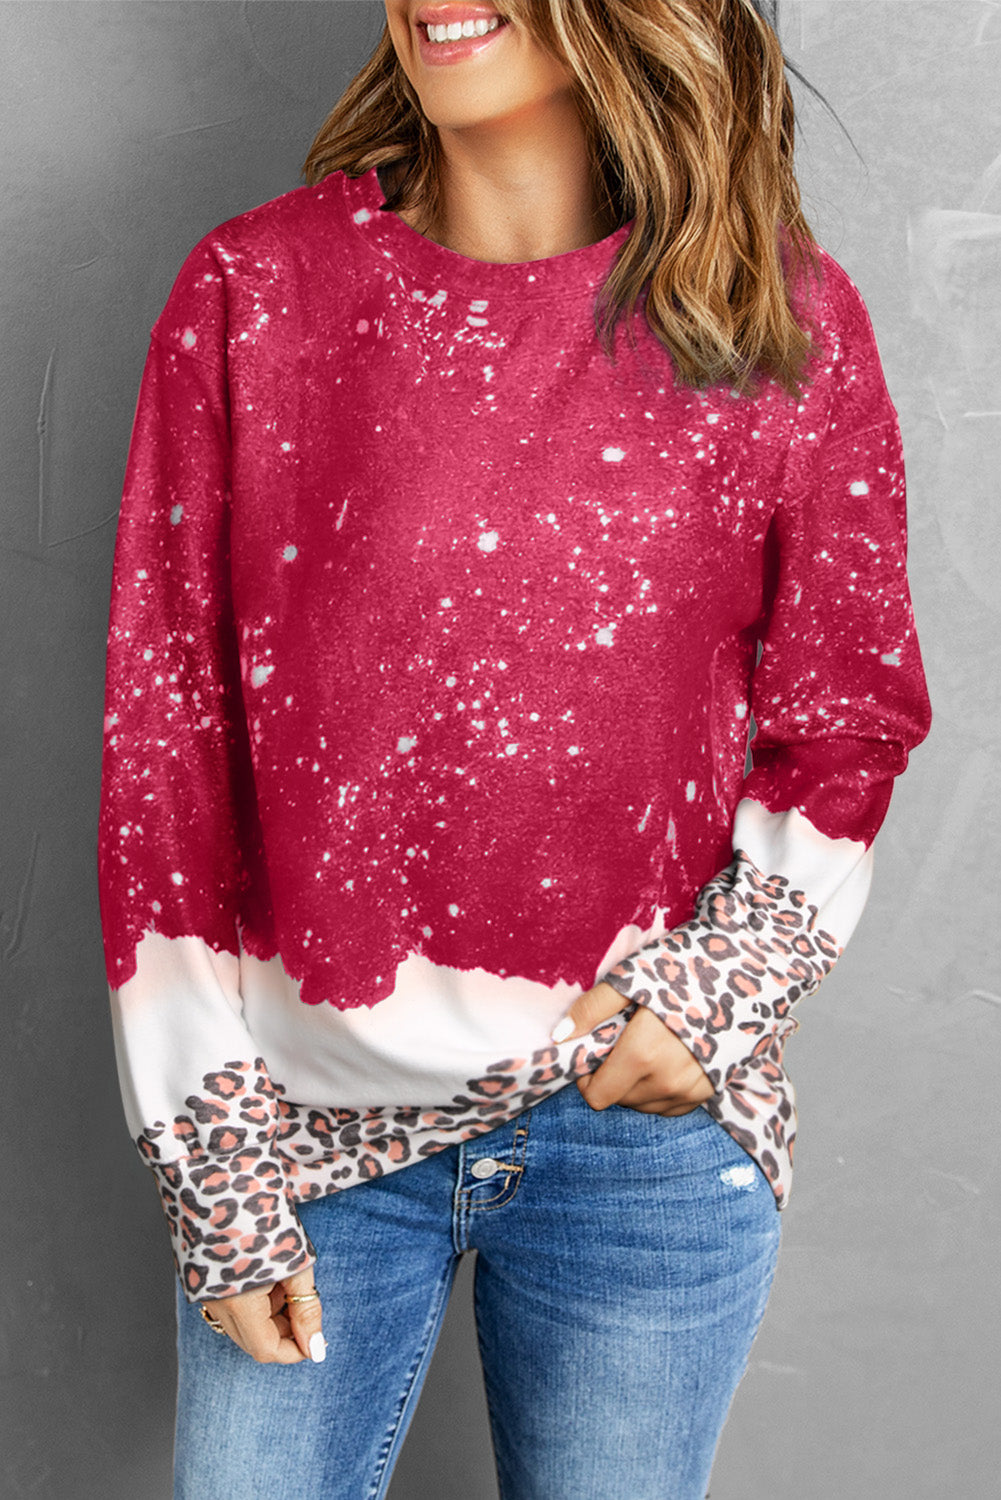 Feurig rotes, gebleichtes Pullover-Sweatshirt mit Leopardenmuster